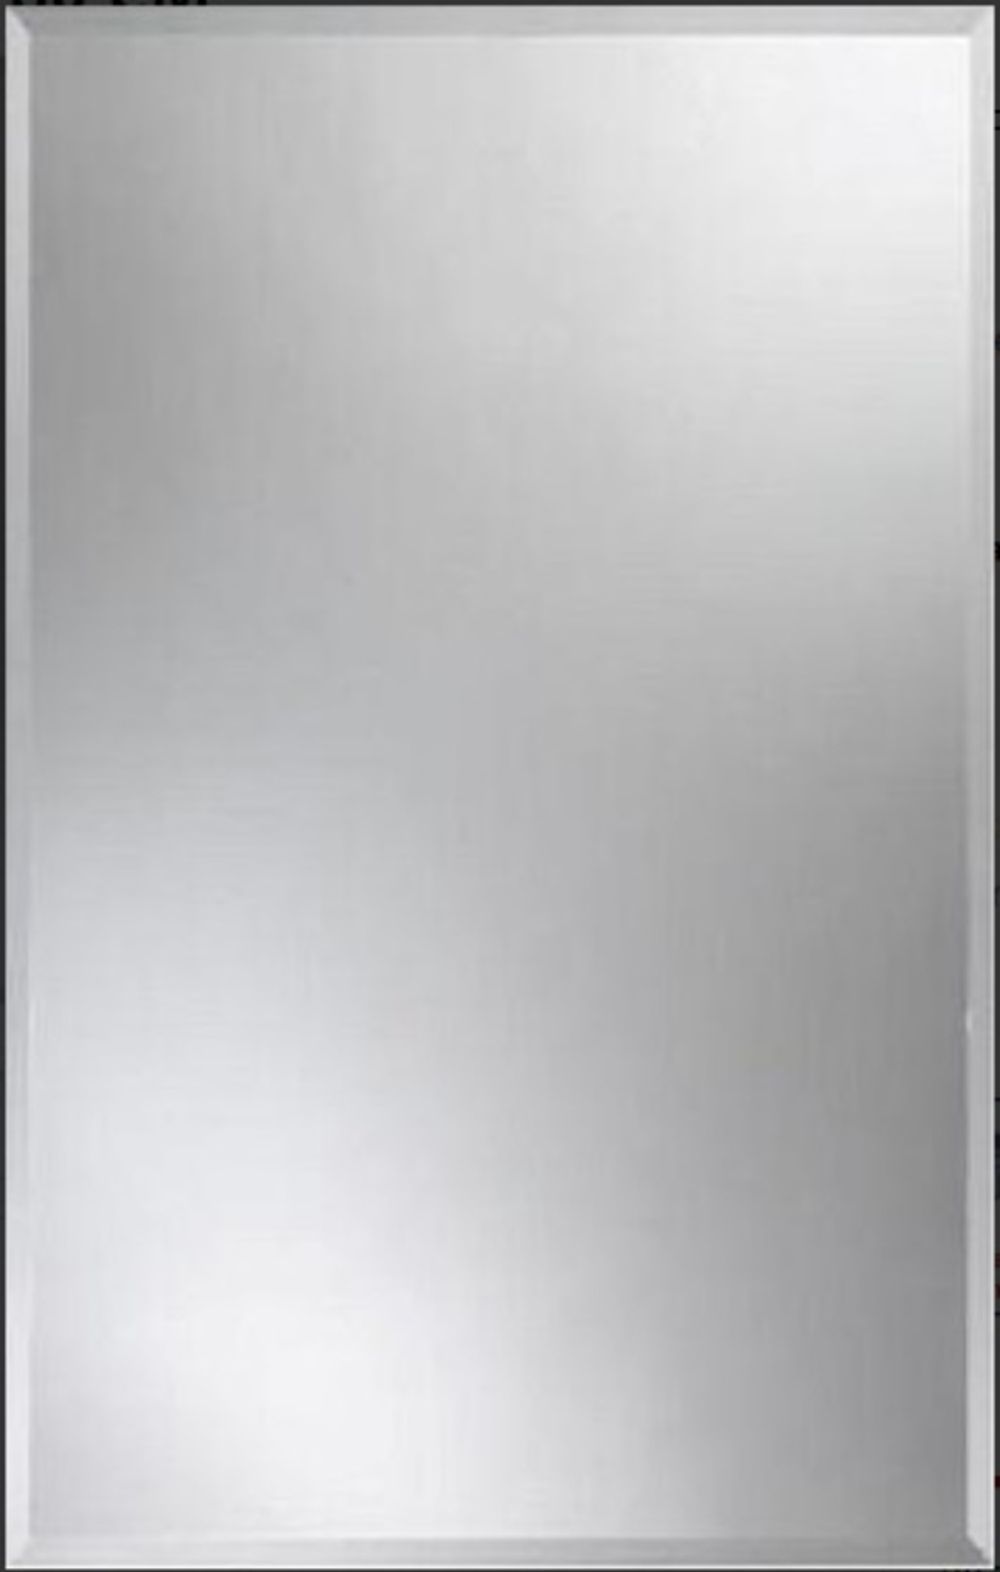 Zrcadlo Amirro obdélník 40x30 cm s fazetou bez závěsů ZOB4030F - Siko - koupelny - kuchyně